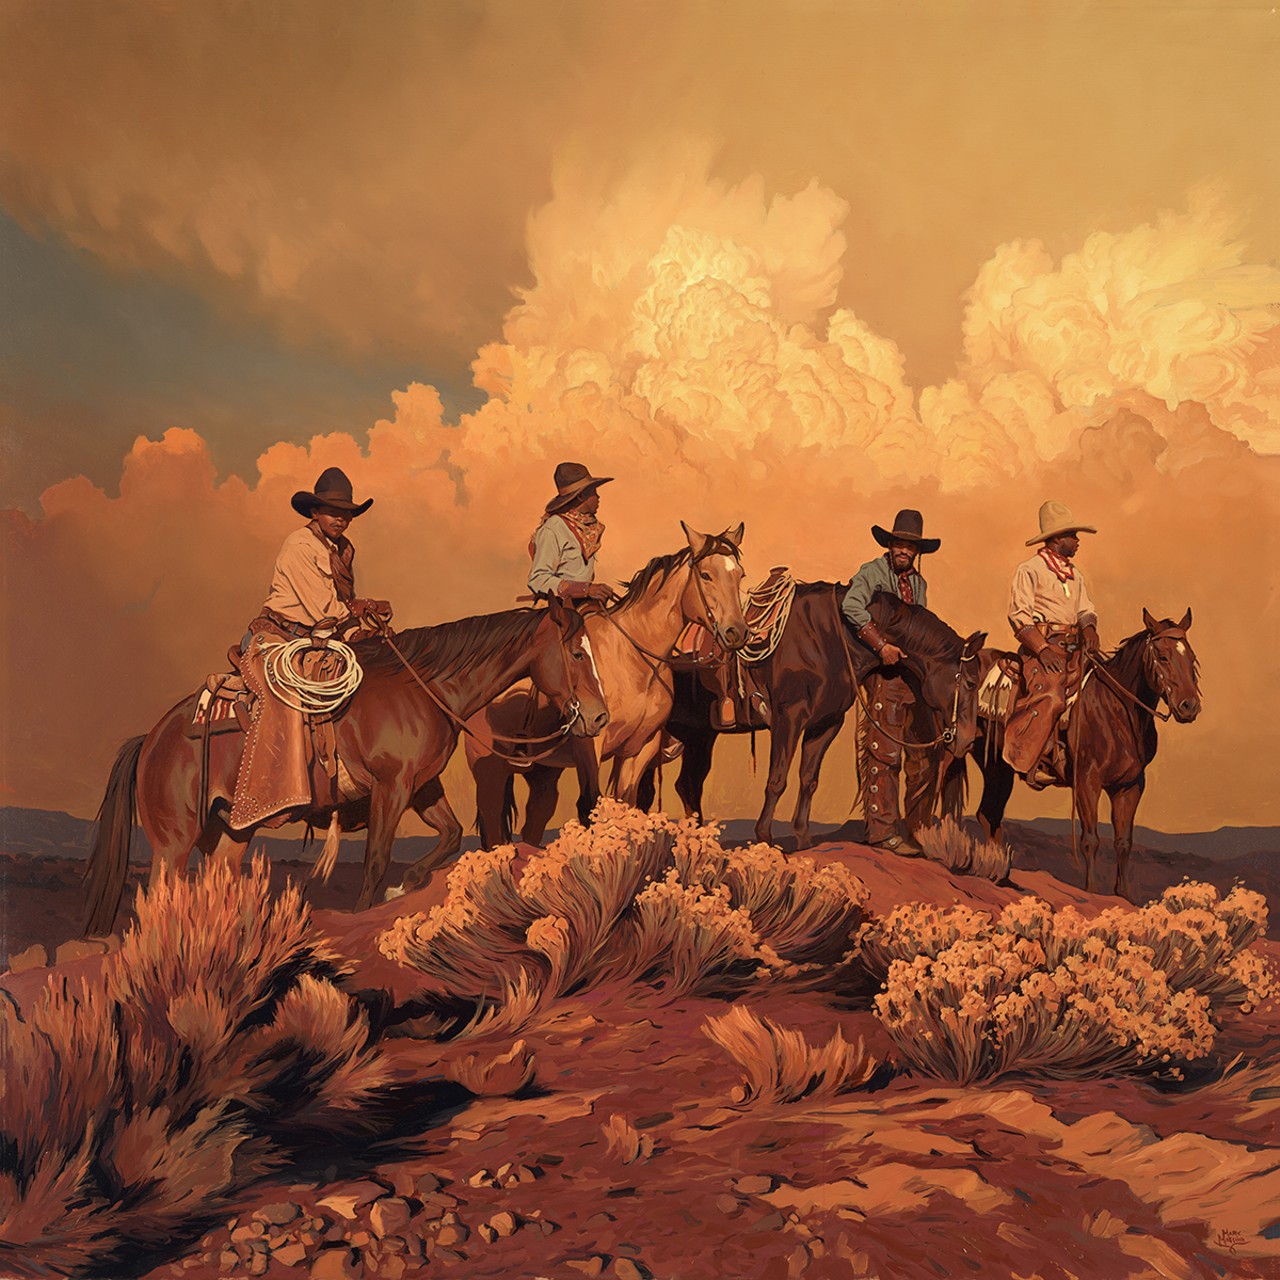 Mark Maggiori, "Riders of the Golden Sky", Oil on linen, 32" x 32", $35,000